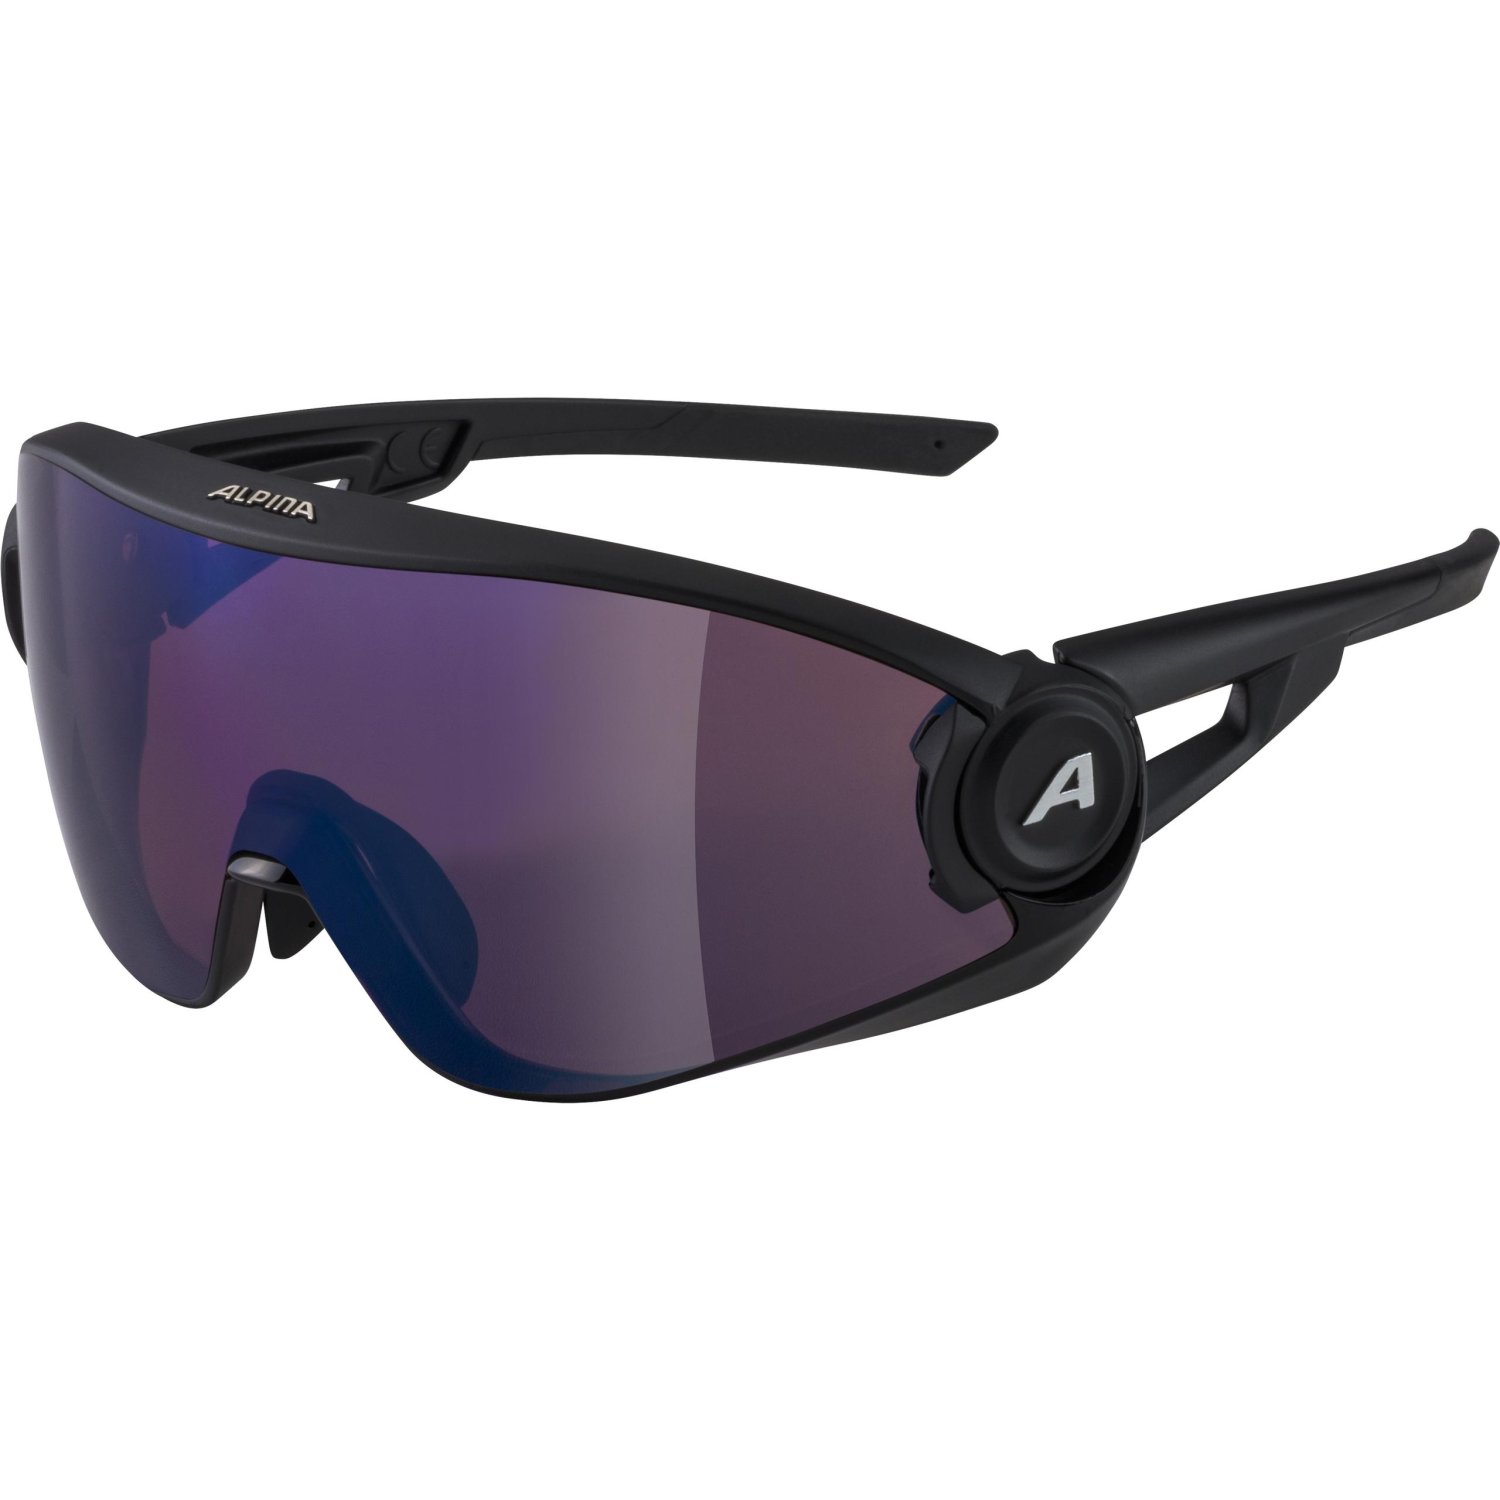 Очки велосипедные Alpina 5W1NG Q+VM, солнцезащитные, Black Matt/Blue Mirror, 2021, A8653531 очки для плавания arena cobra ultra swipe mirror 002507310 зеркальные